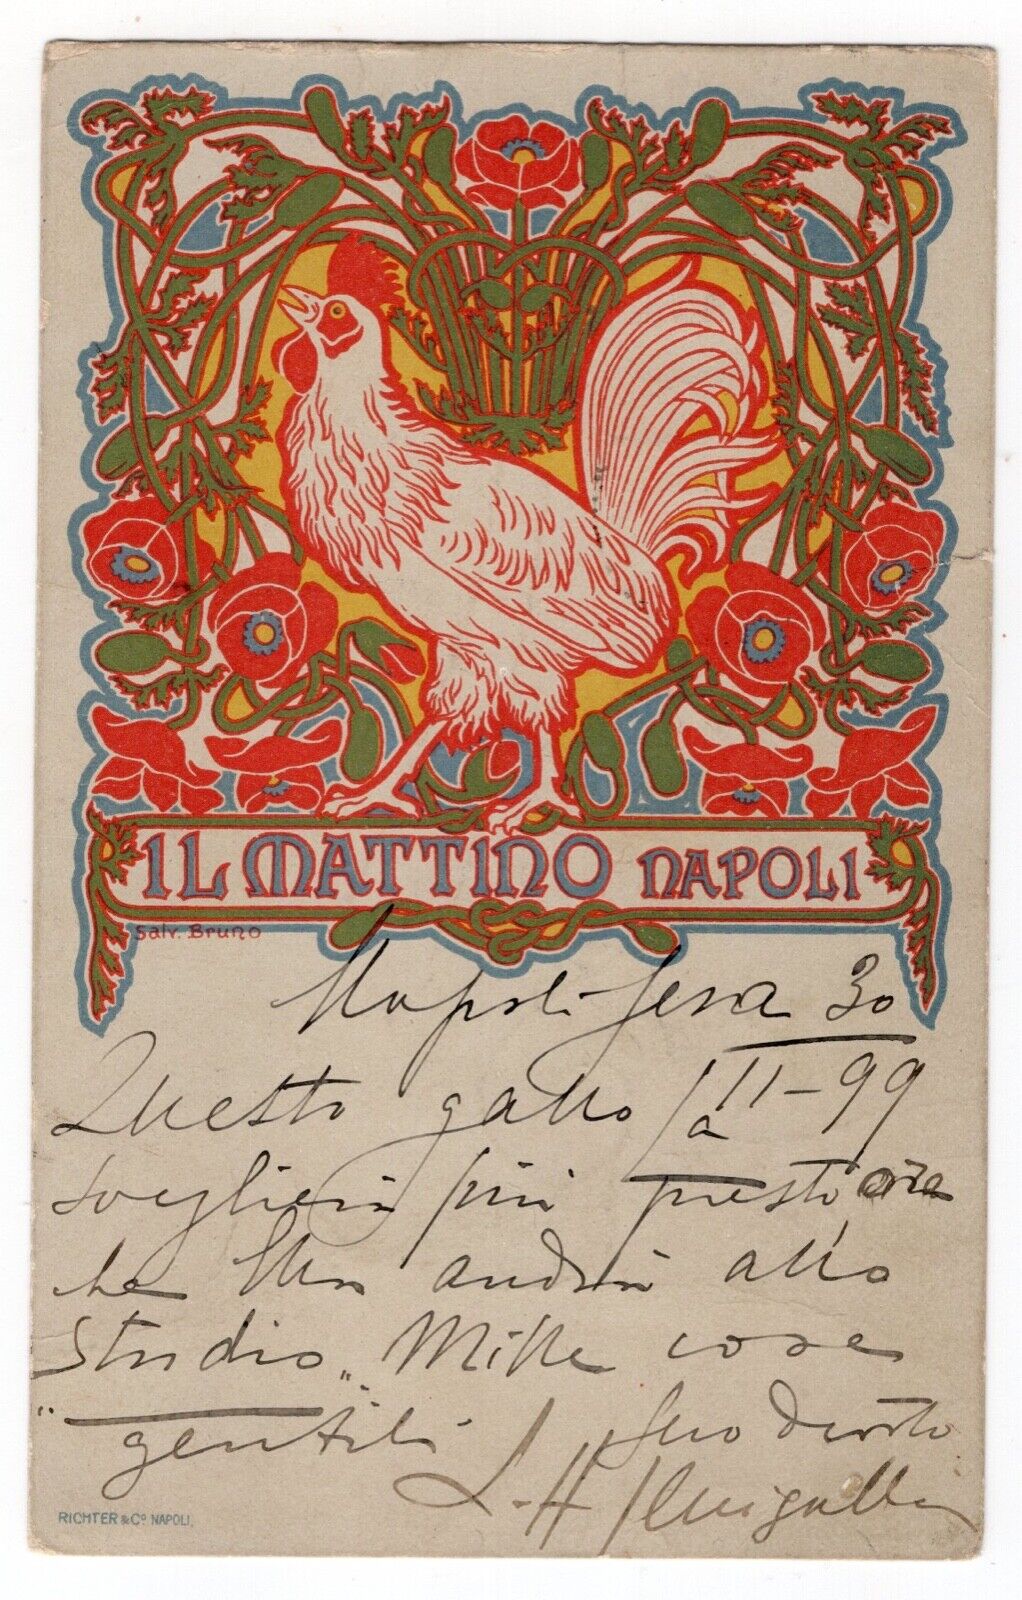 1899 IL MATTINO NAPOLI ROOSTER ADVERTISEMENT POSTCARD SIGNED SALVATORE BRUNO